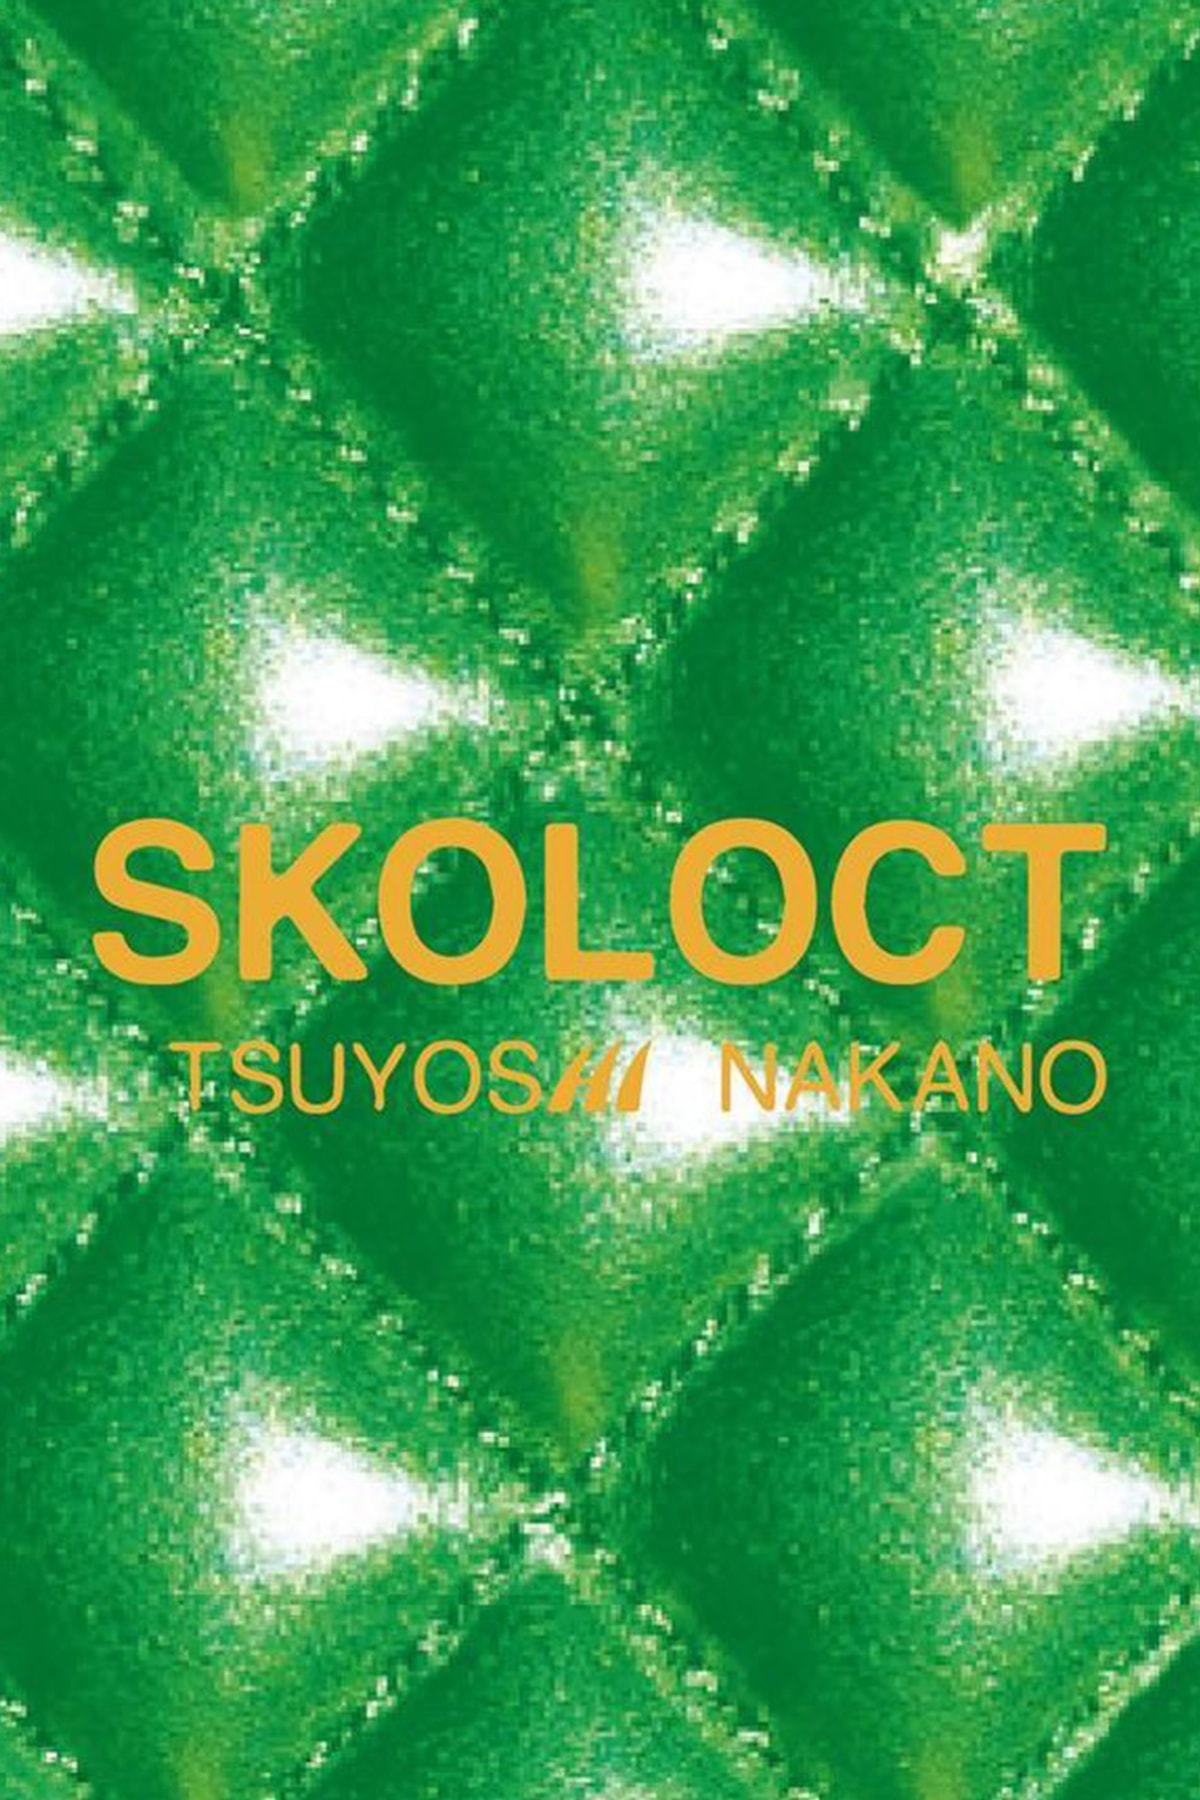 日本知名藝術家 SKOLOCT 攜手 GHOST® 打造全新聯乘系列首飾